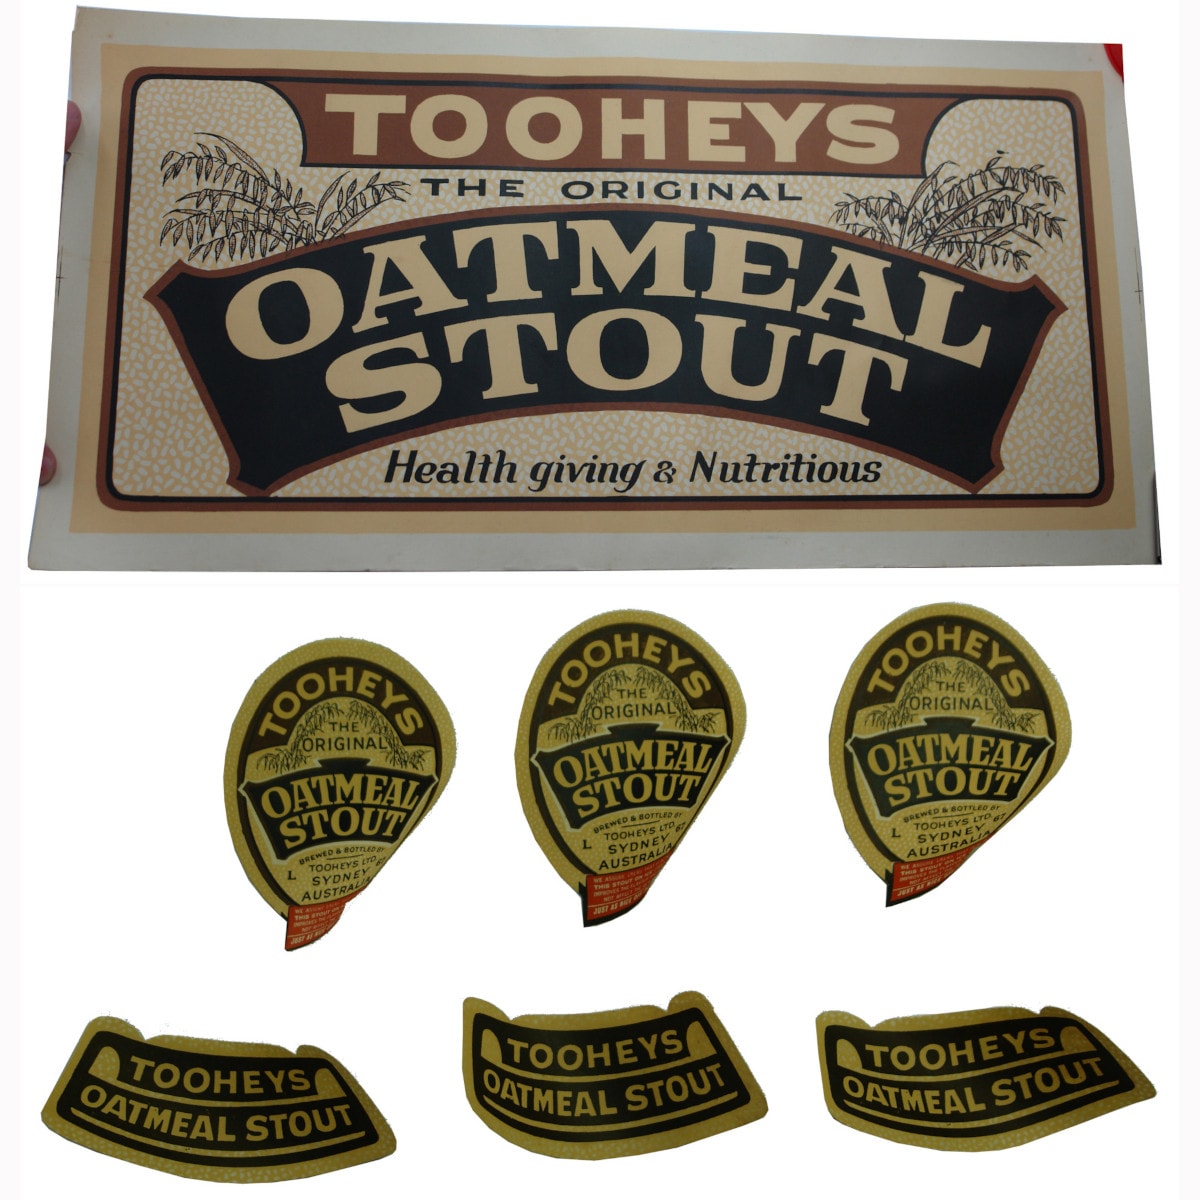 Beer Advertising Poster. Tooheys Original Oatmeal Stout. Also labels for Tooheys Oatmeal Stout.